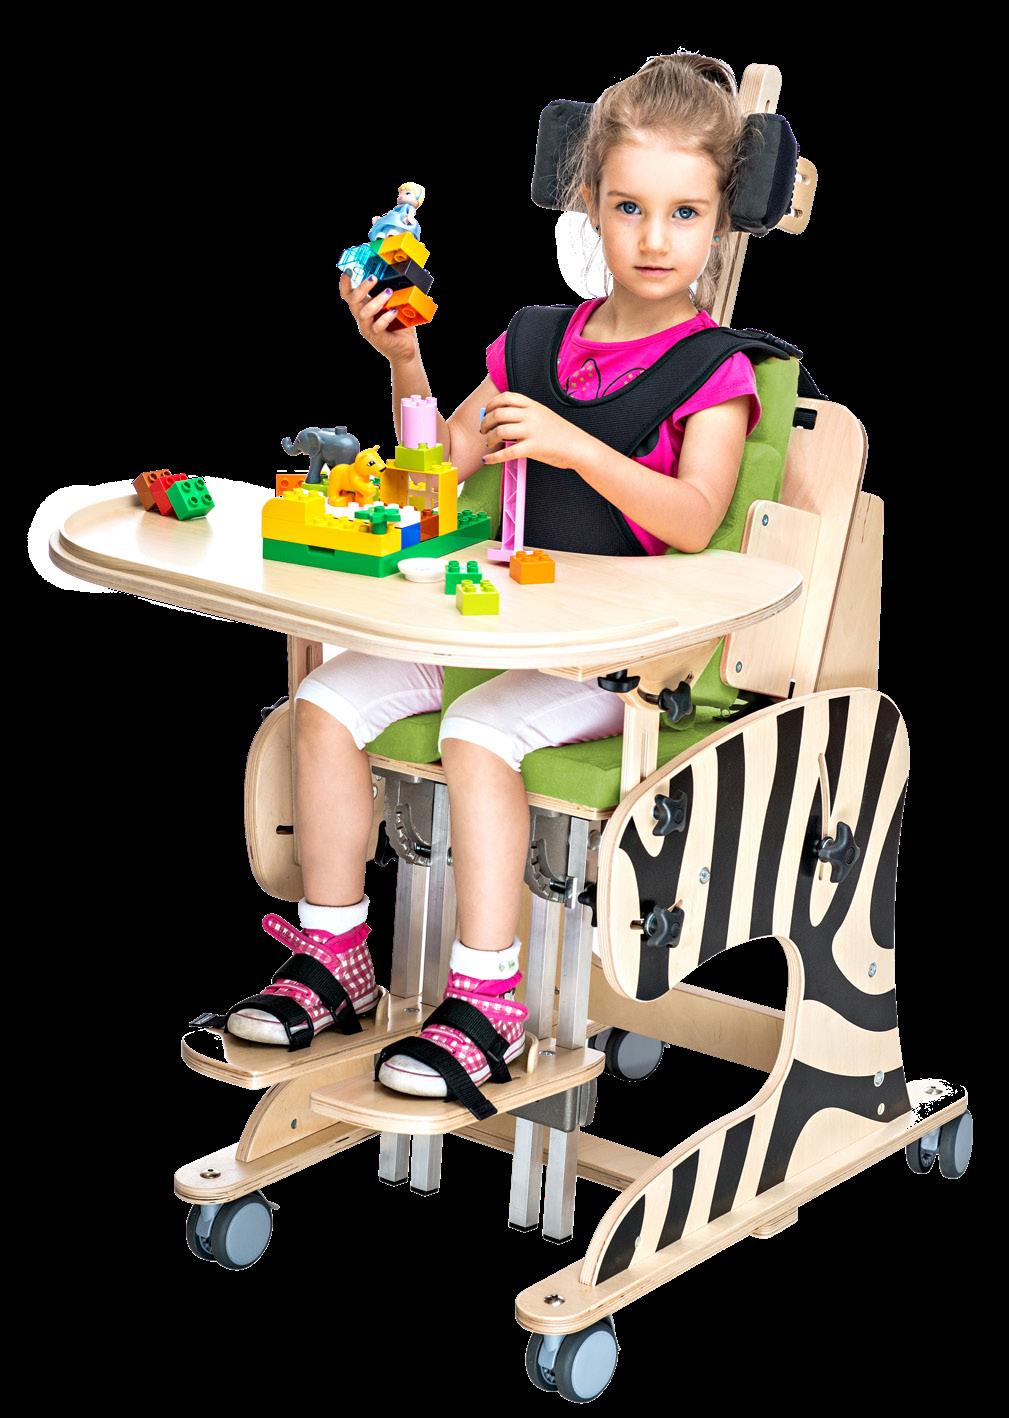 ZEBRA Fotelik rehabilitacyjny ZEBRA przeznaczony jest dla dzieci i młodzieży ze znacznymi deficytami narządu ruchu, które nie nabyły umiejętności samodzielnego siedzenia lub mają znaczne trudności z